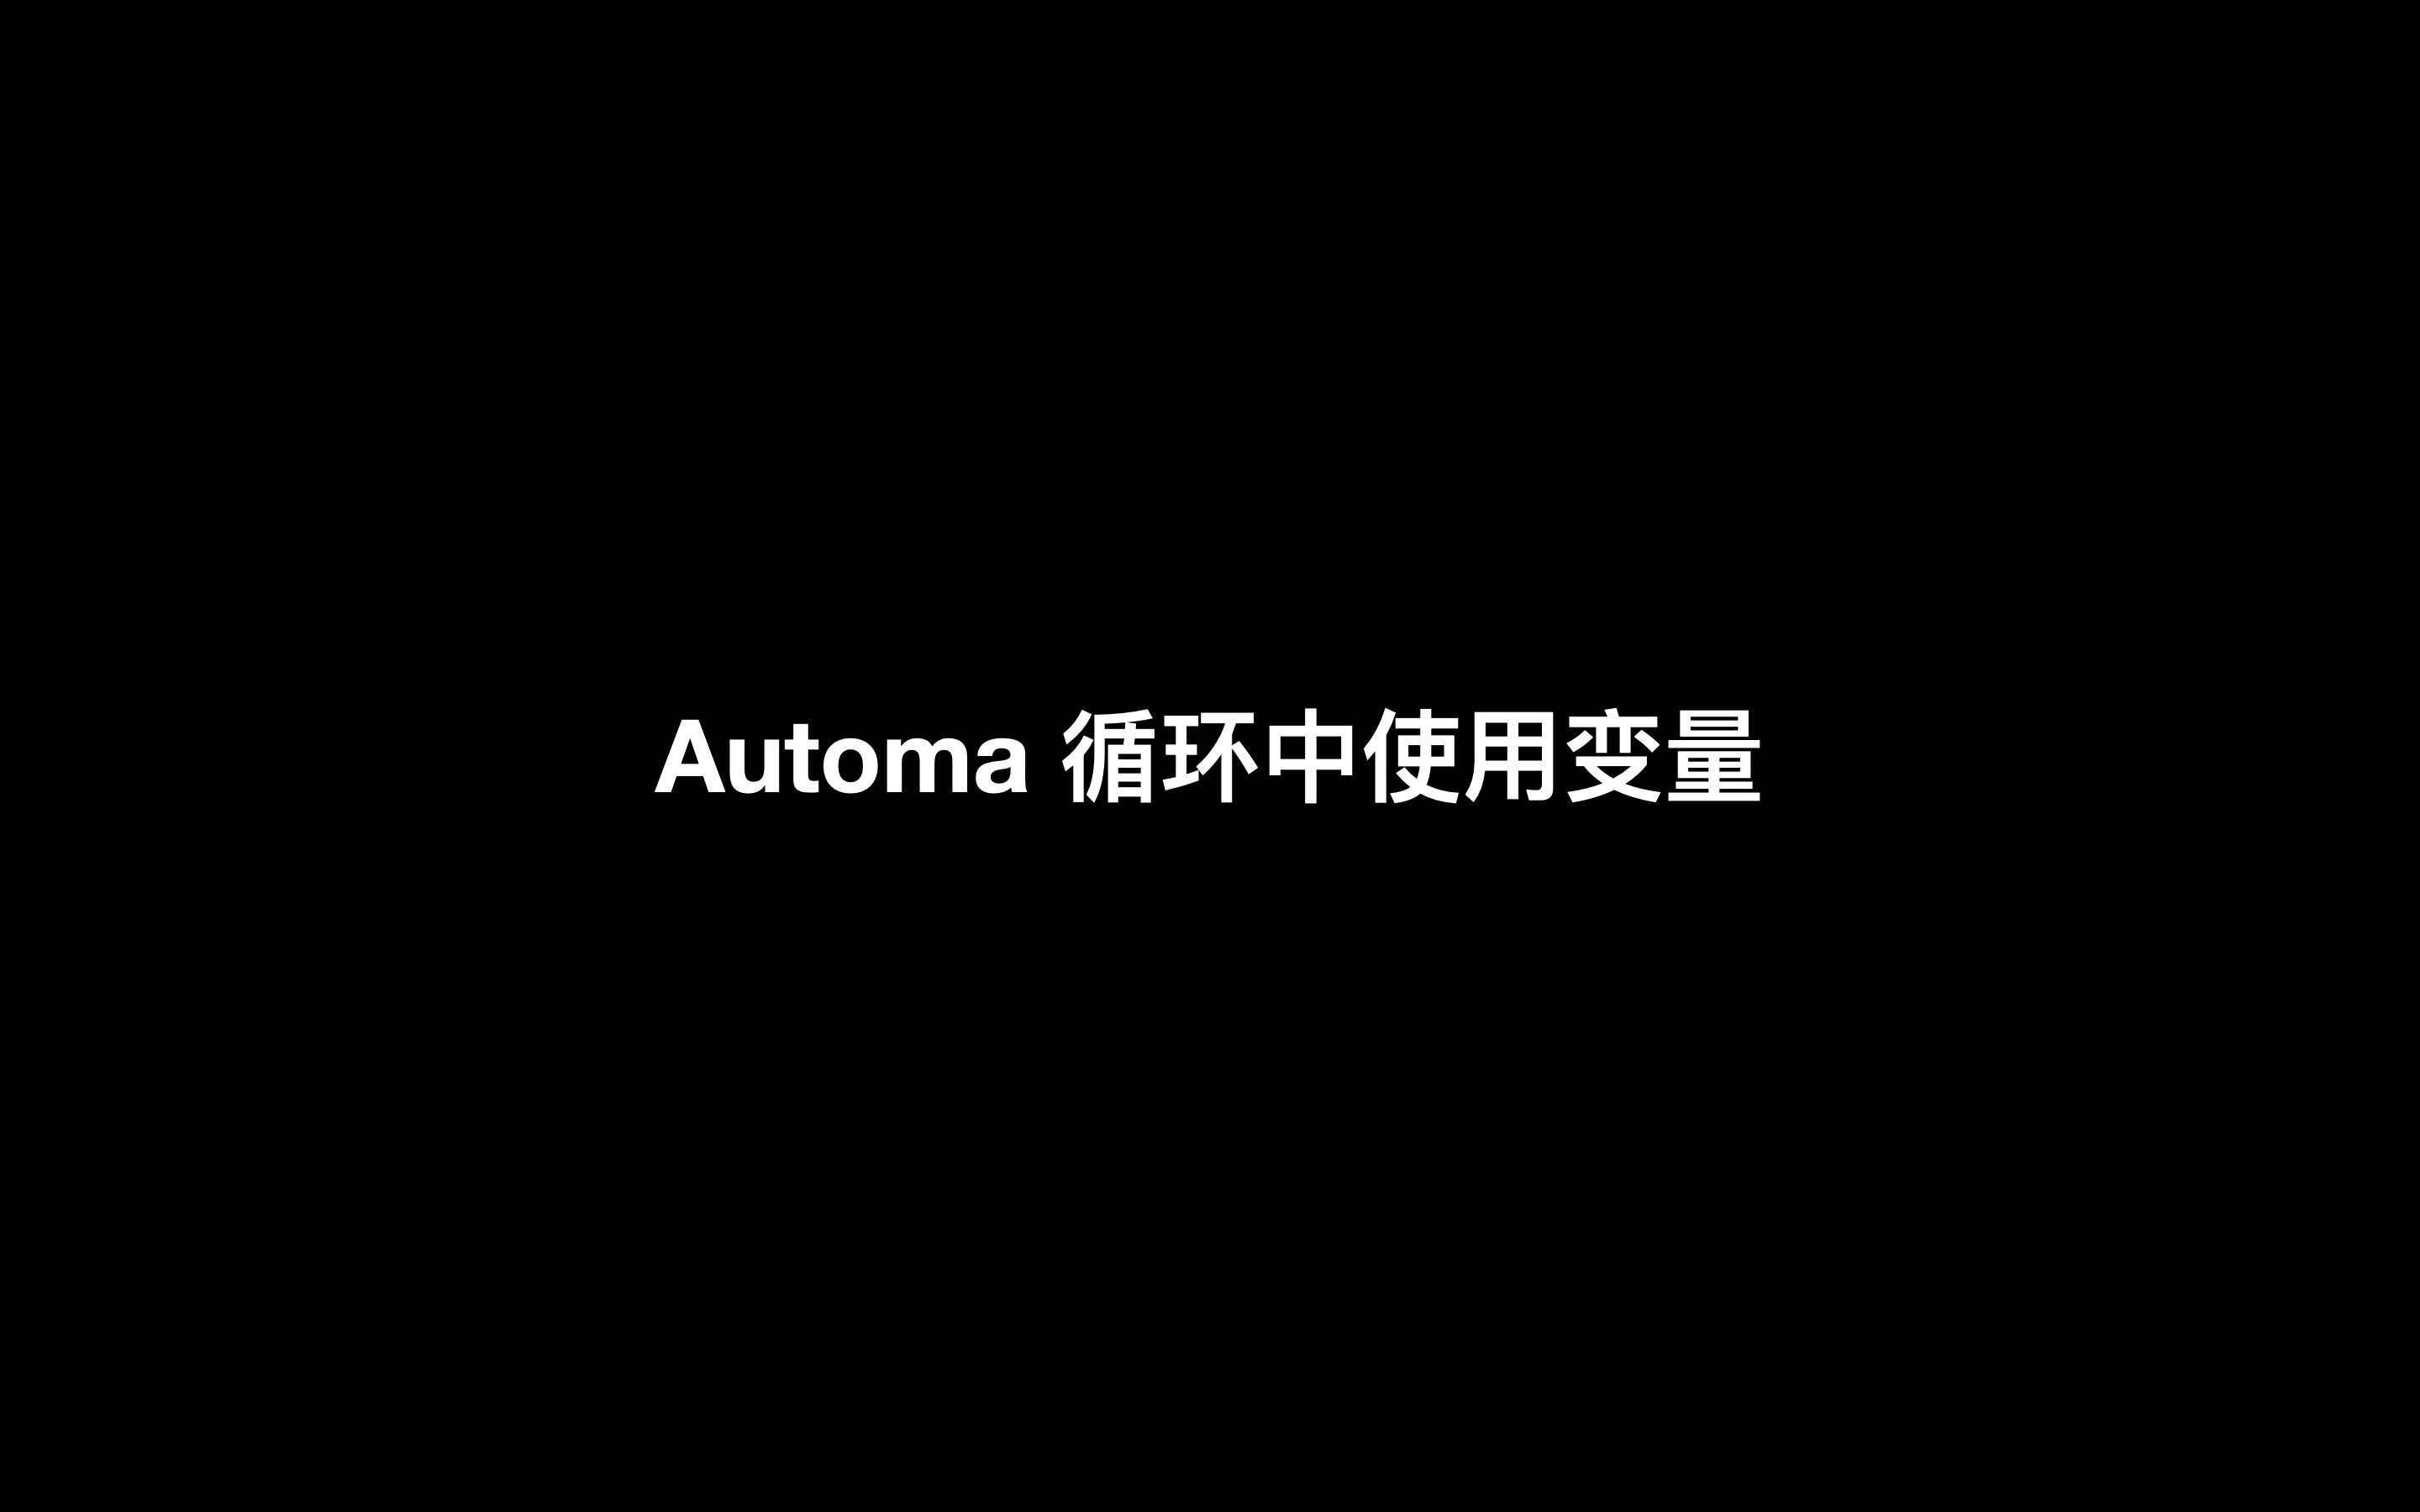 Automa 循环模块中使用变量